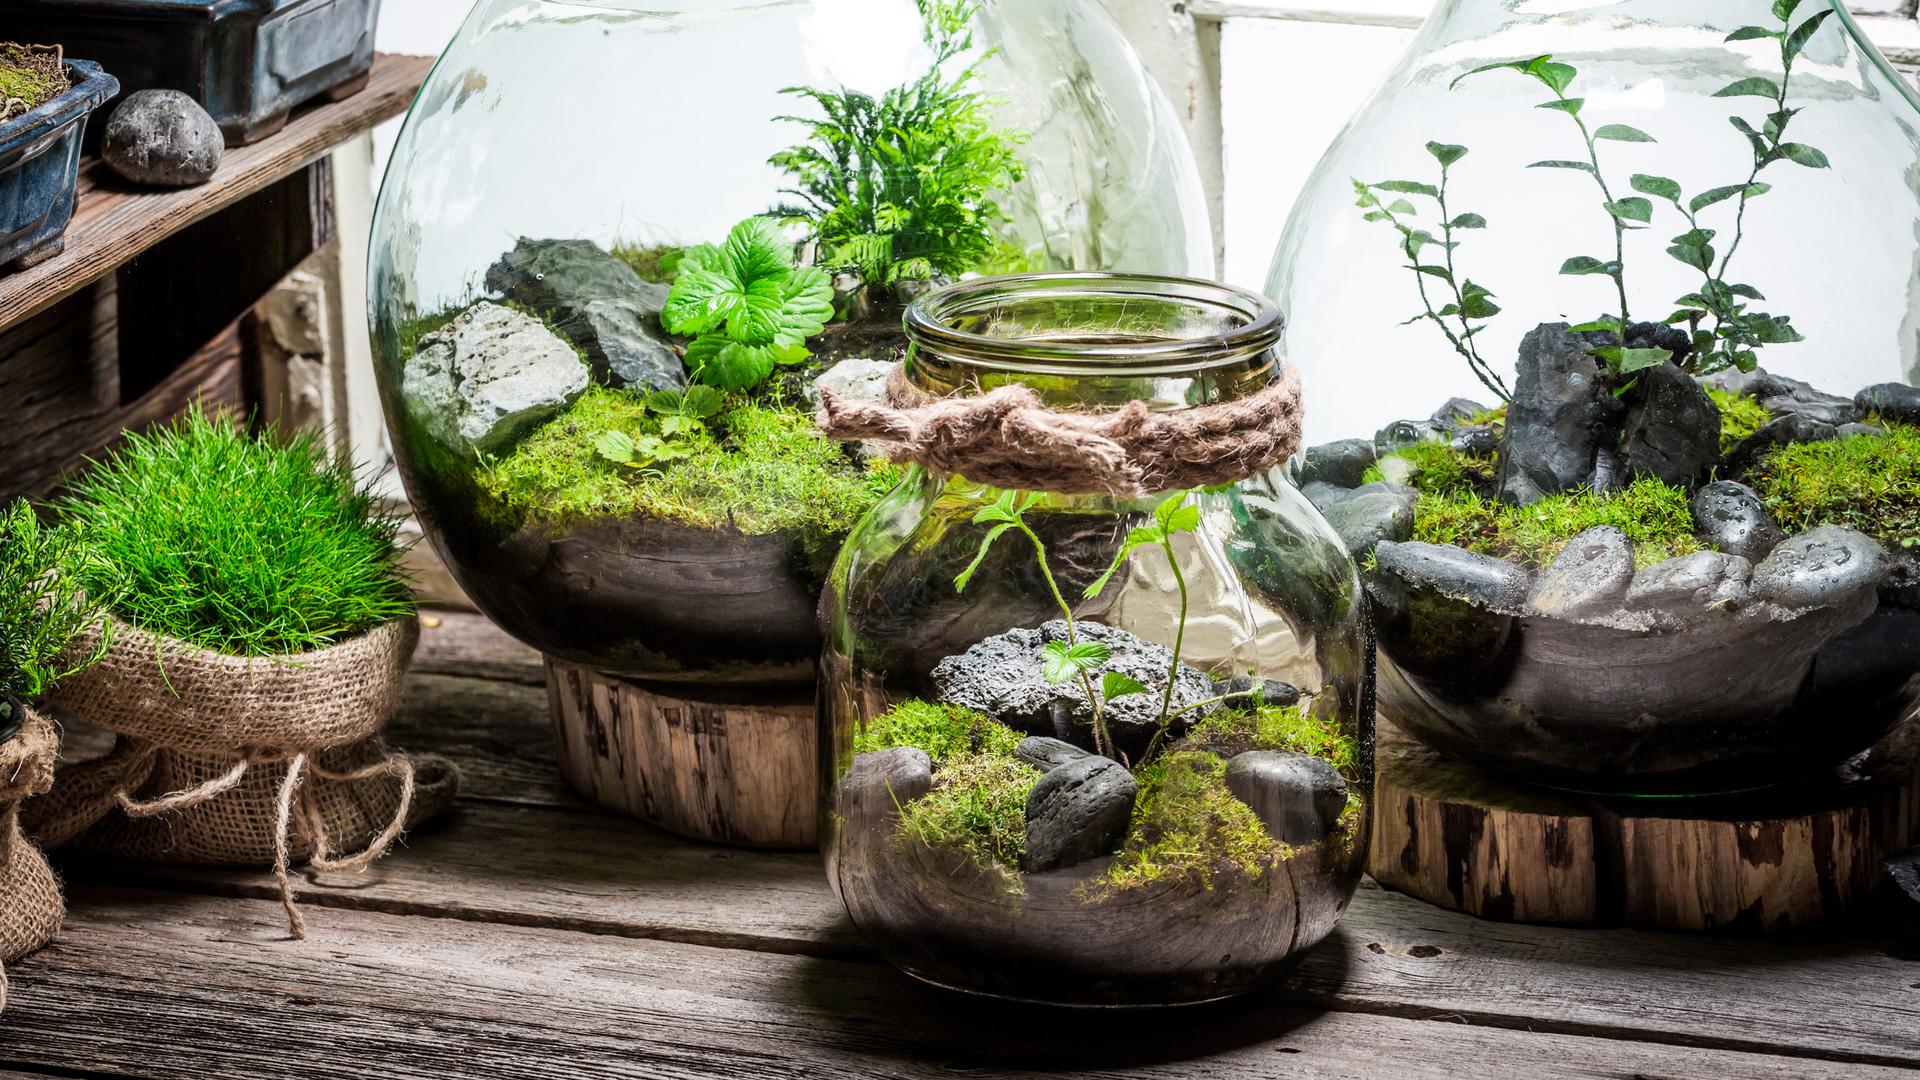 Minigarten im Glas bringt ein Stück Natur ins Haus - Fresh Ideen für